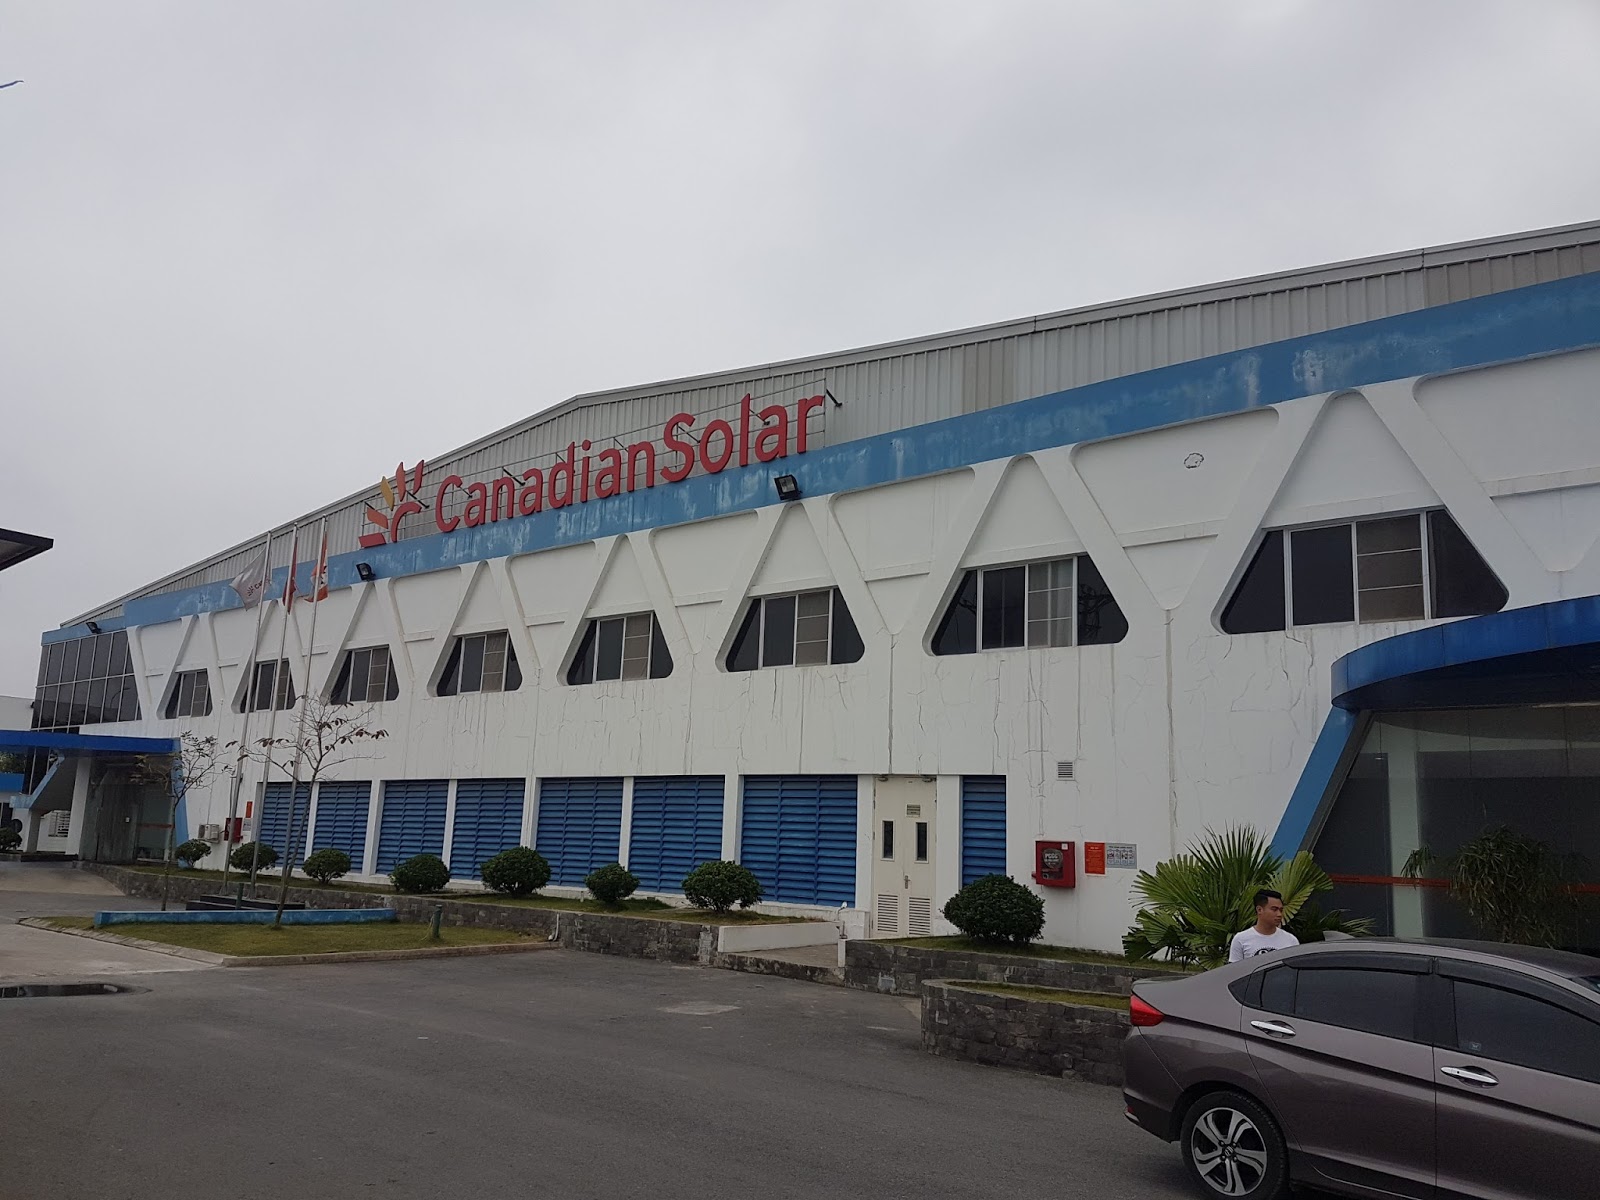 Nhà máy Canadian solar